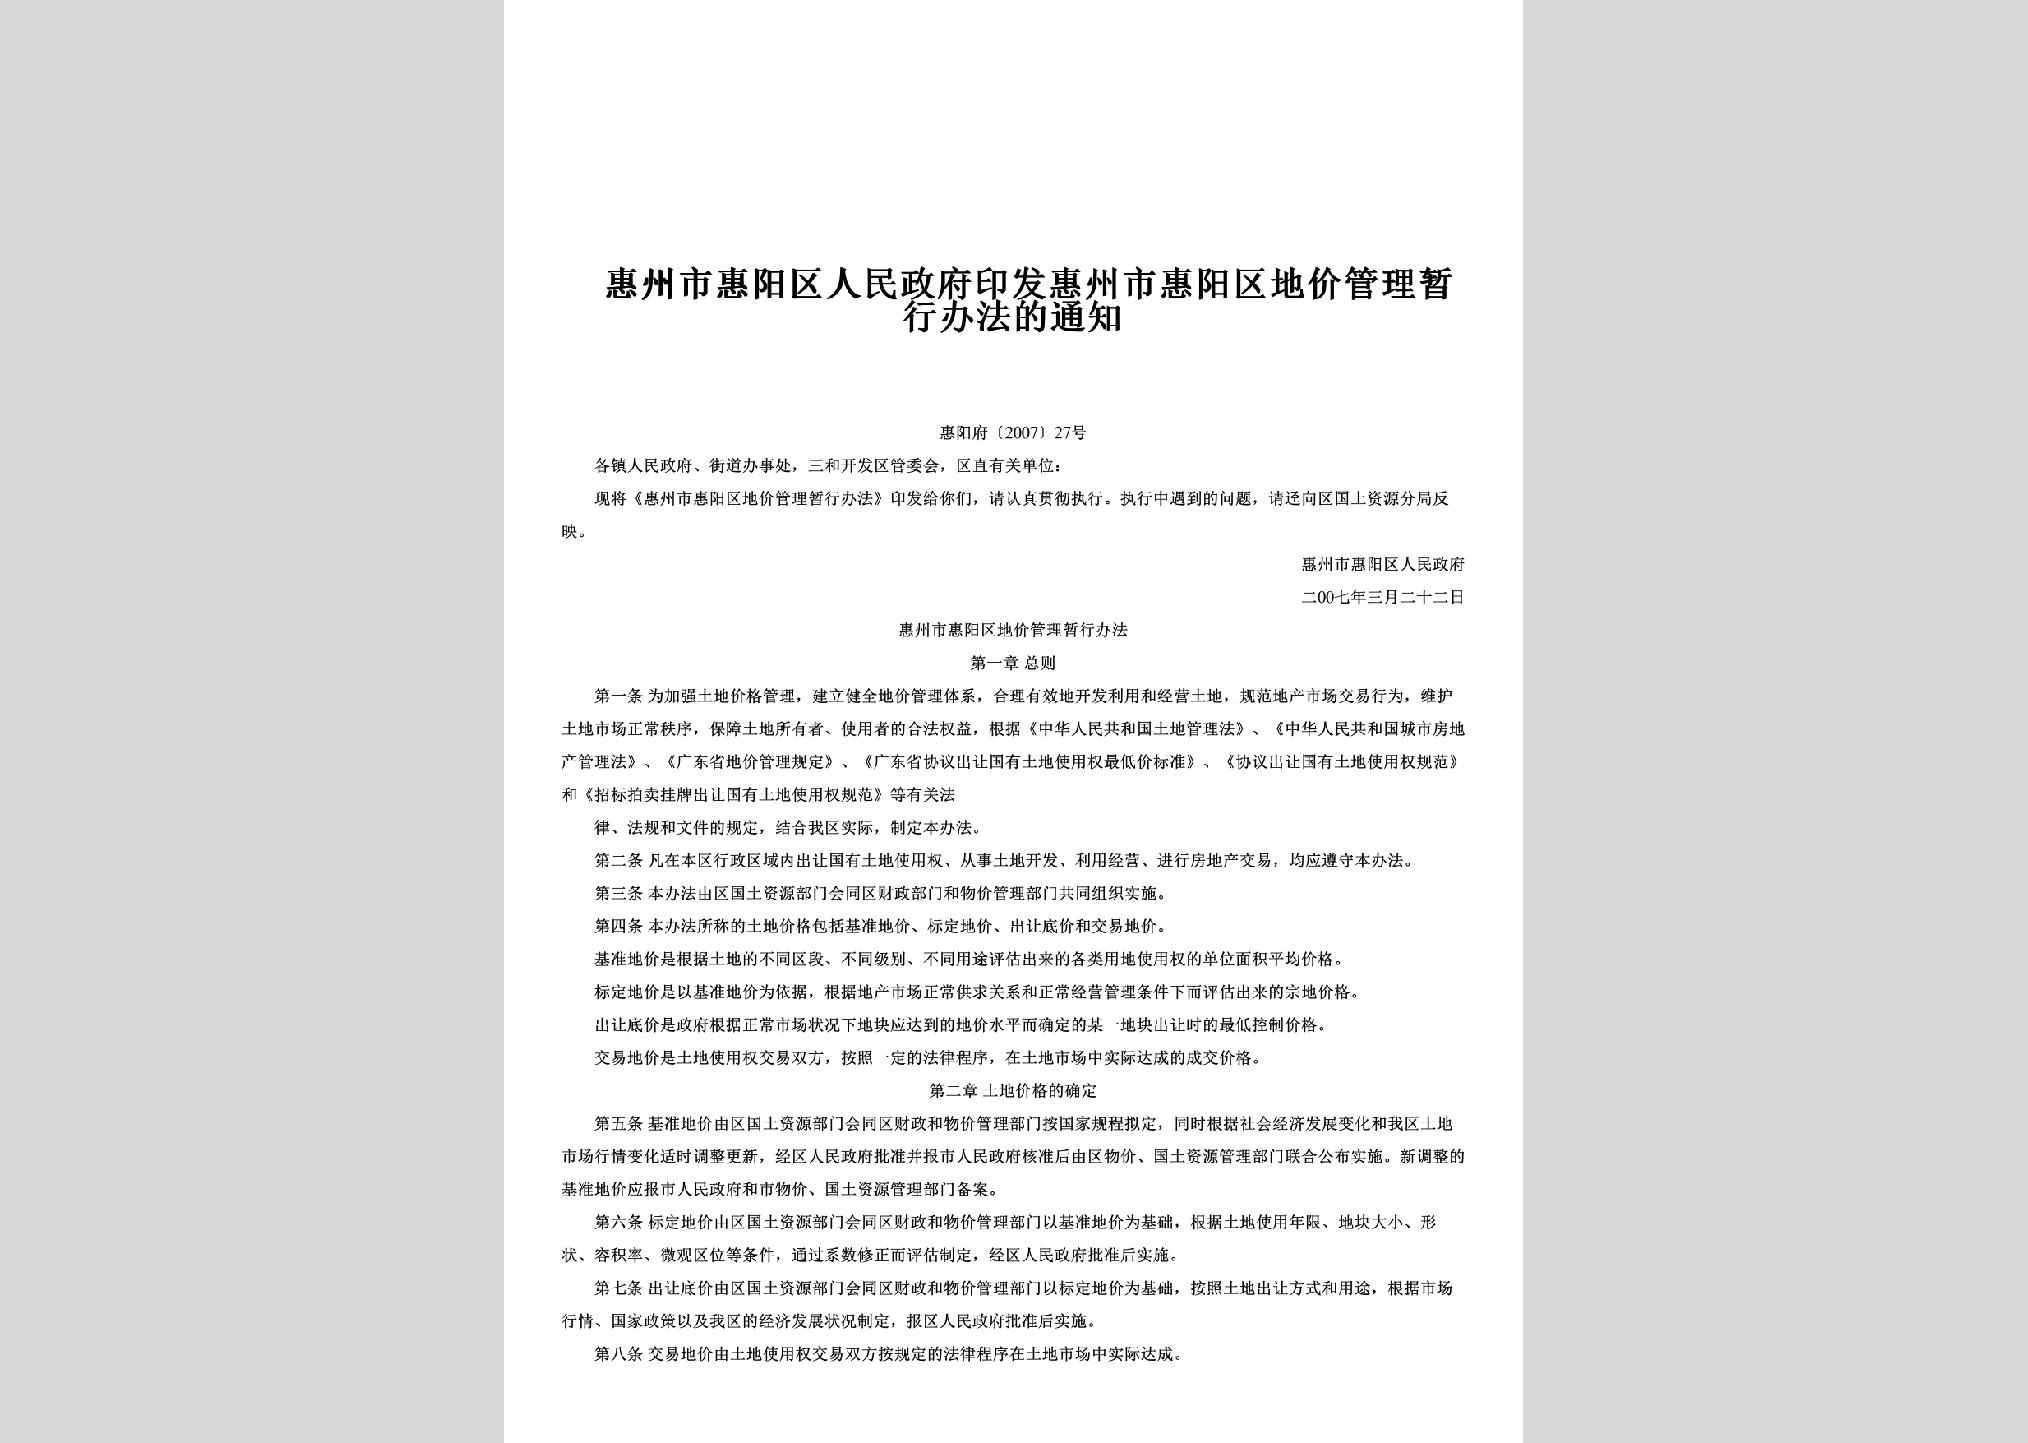 惠阳府[2007]27号：印发惠州市惠阳区地价管理暂行办法的通知